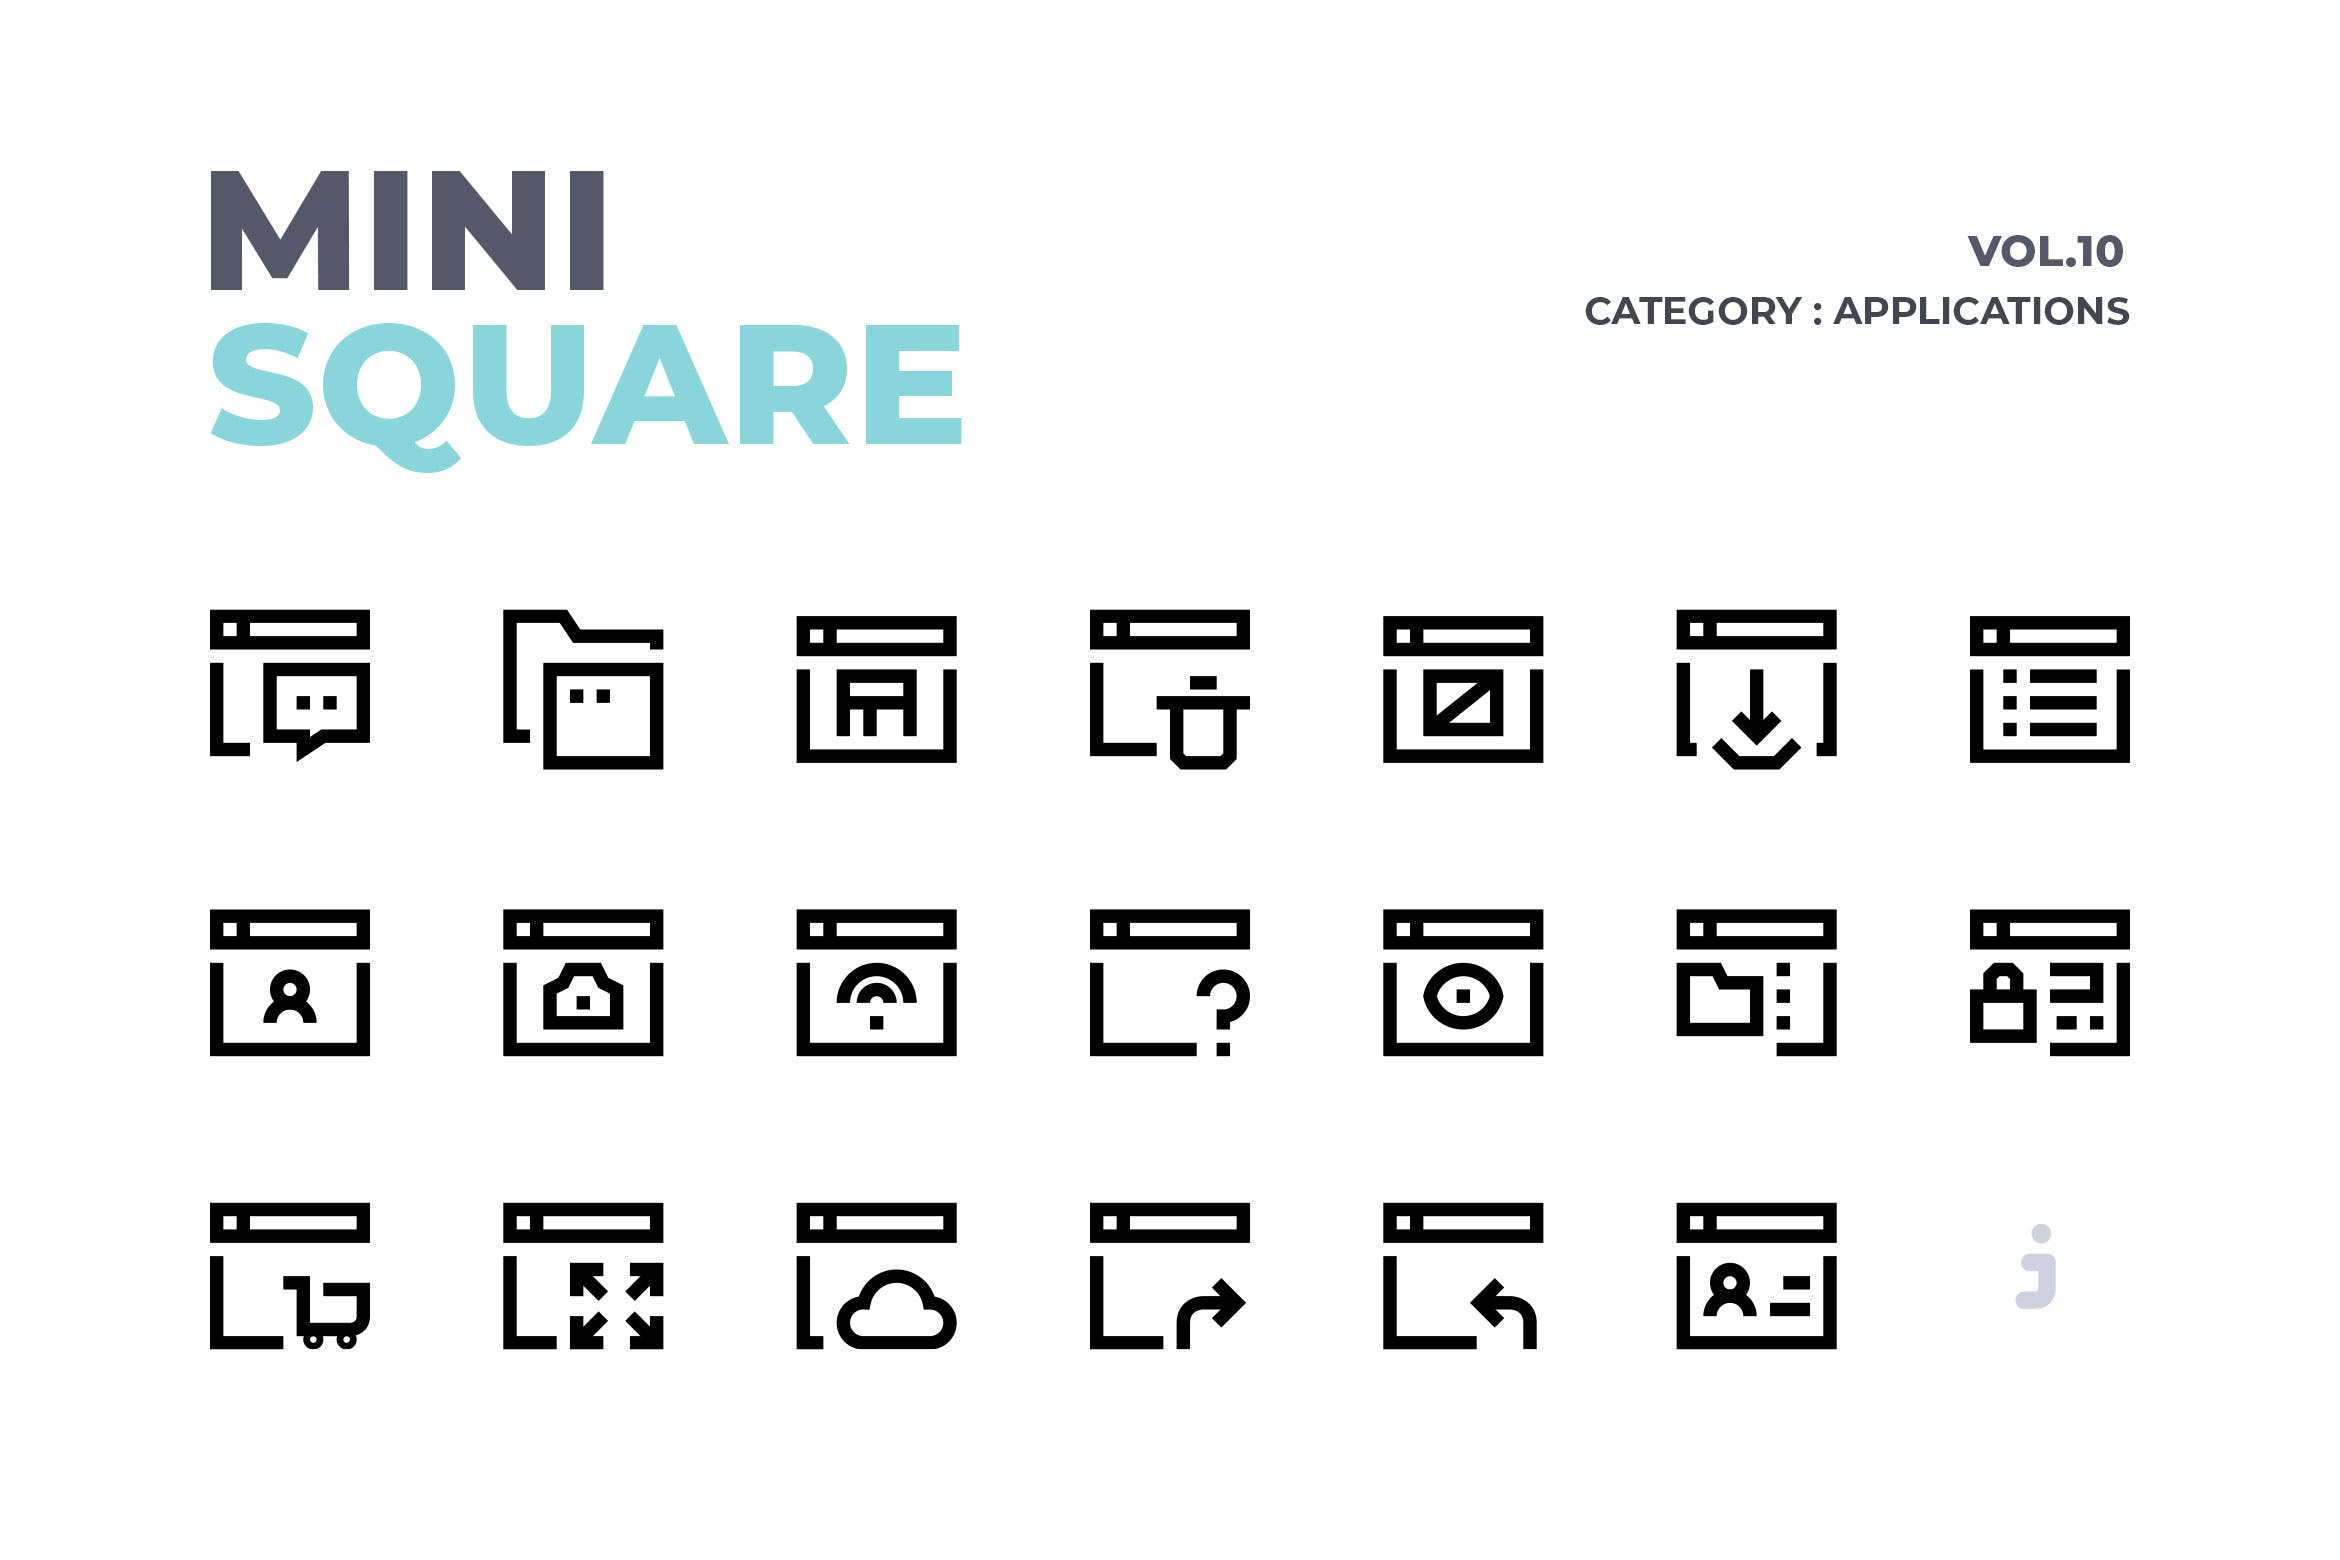 软件应用简约线条风格矢量图标素材 Mini square